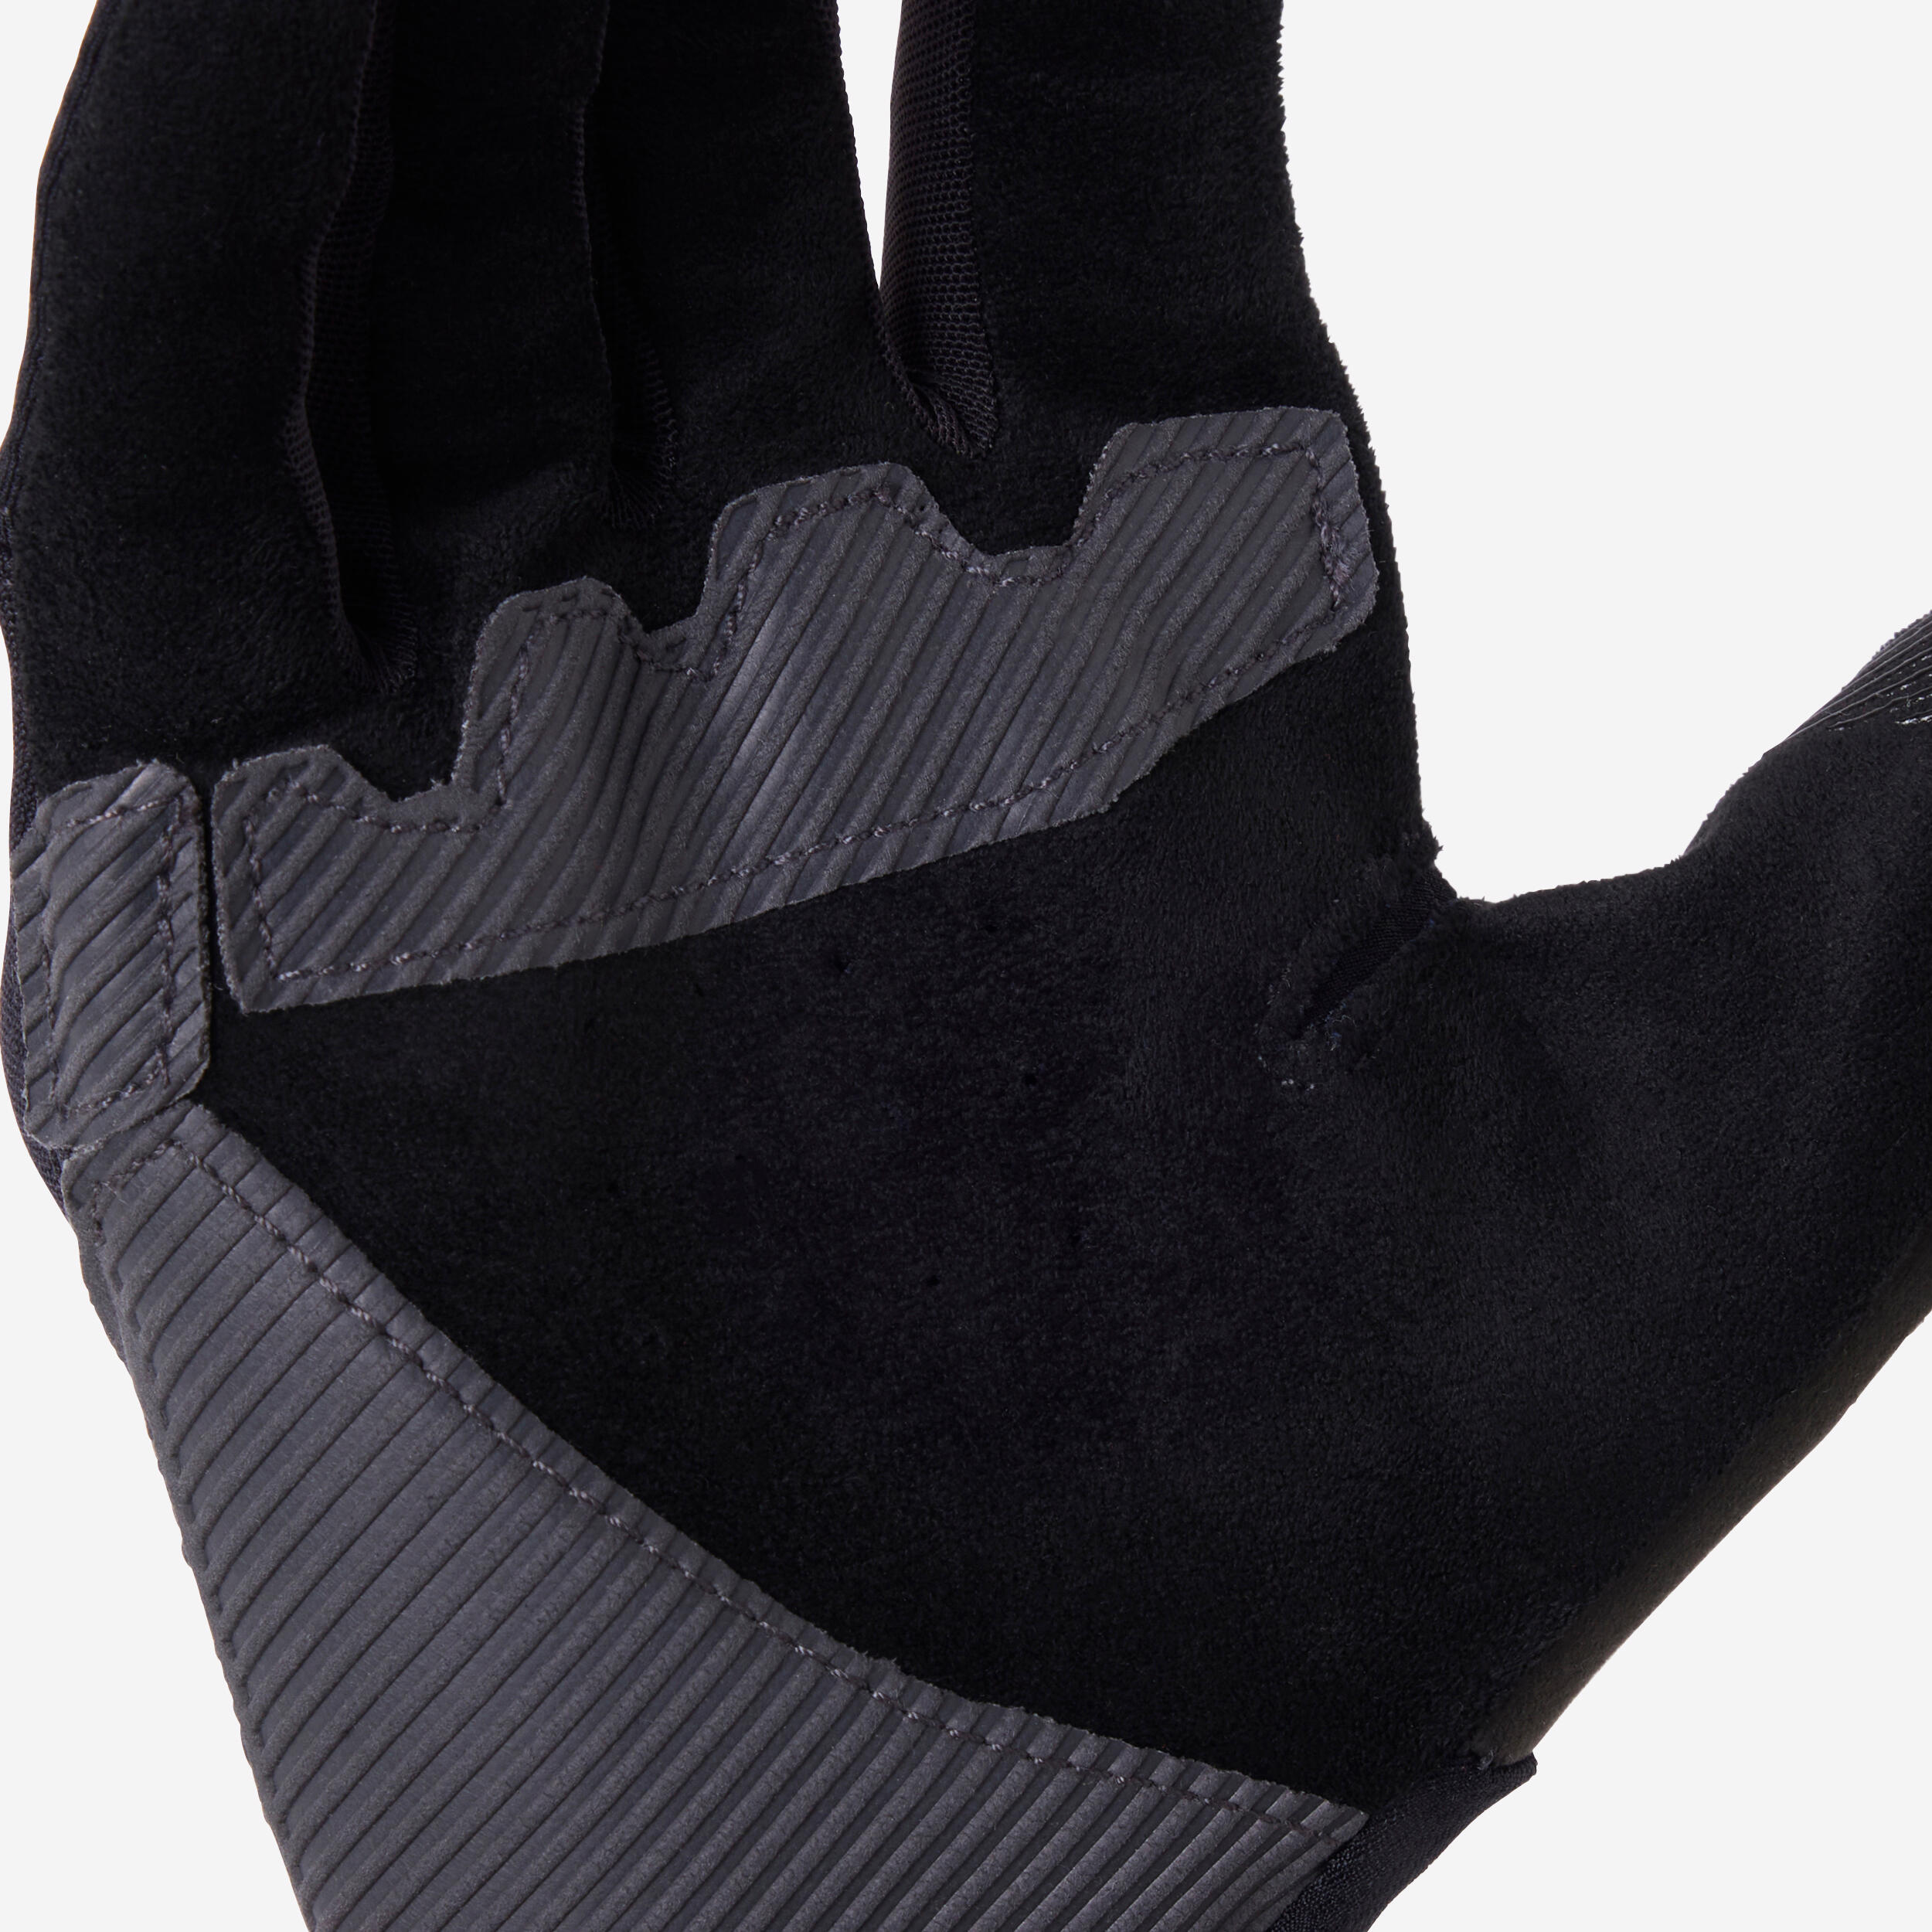 All Mountain Mountain Bike Gloves - Black 7/10